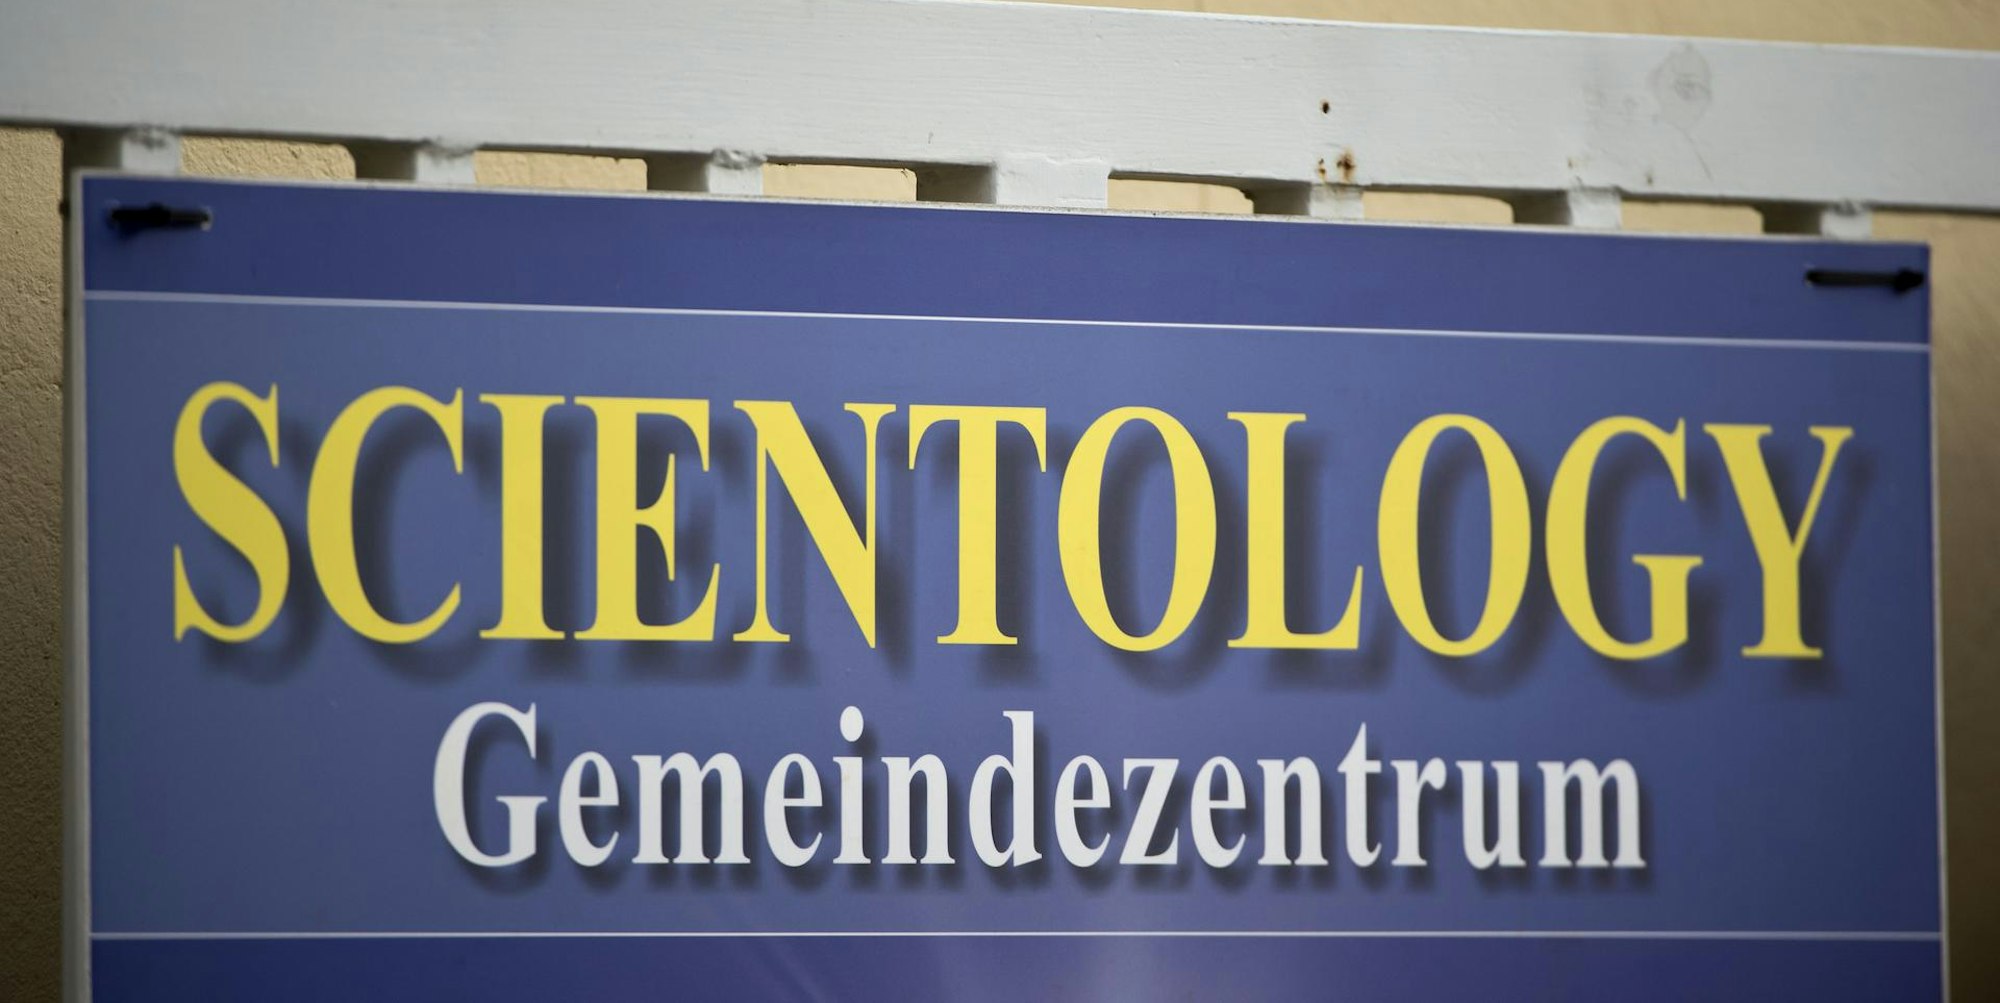 Scientology_Gemeindezentrum